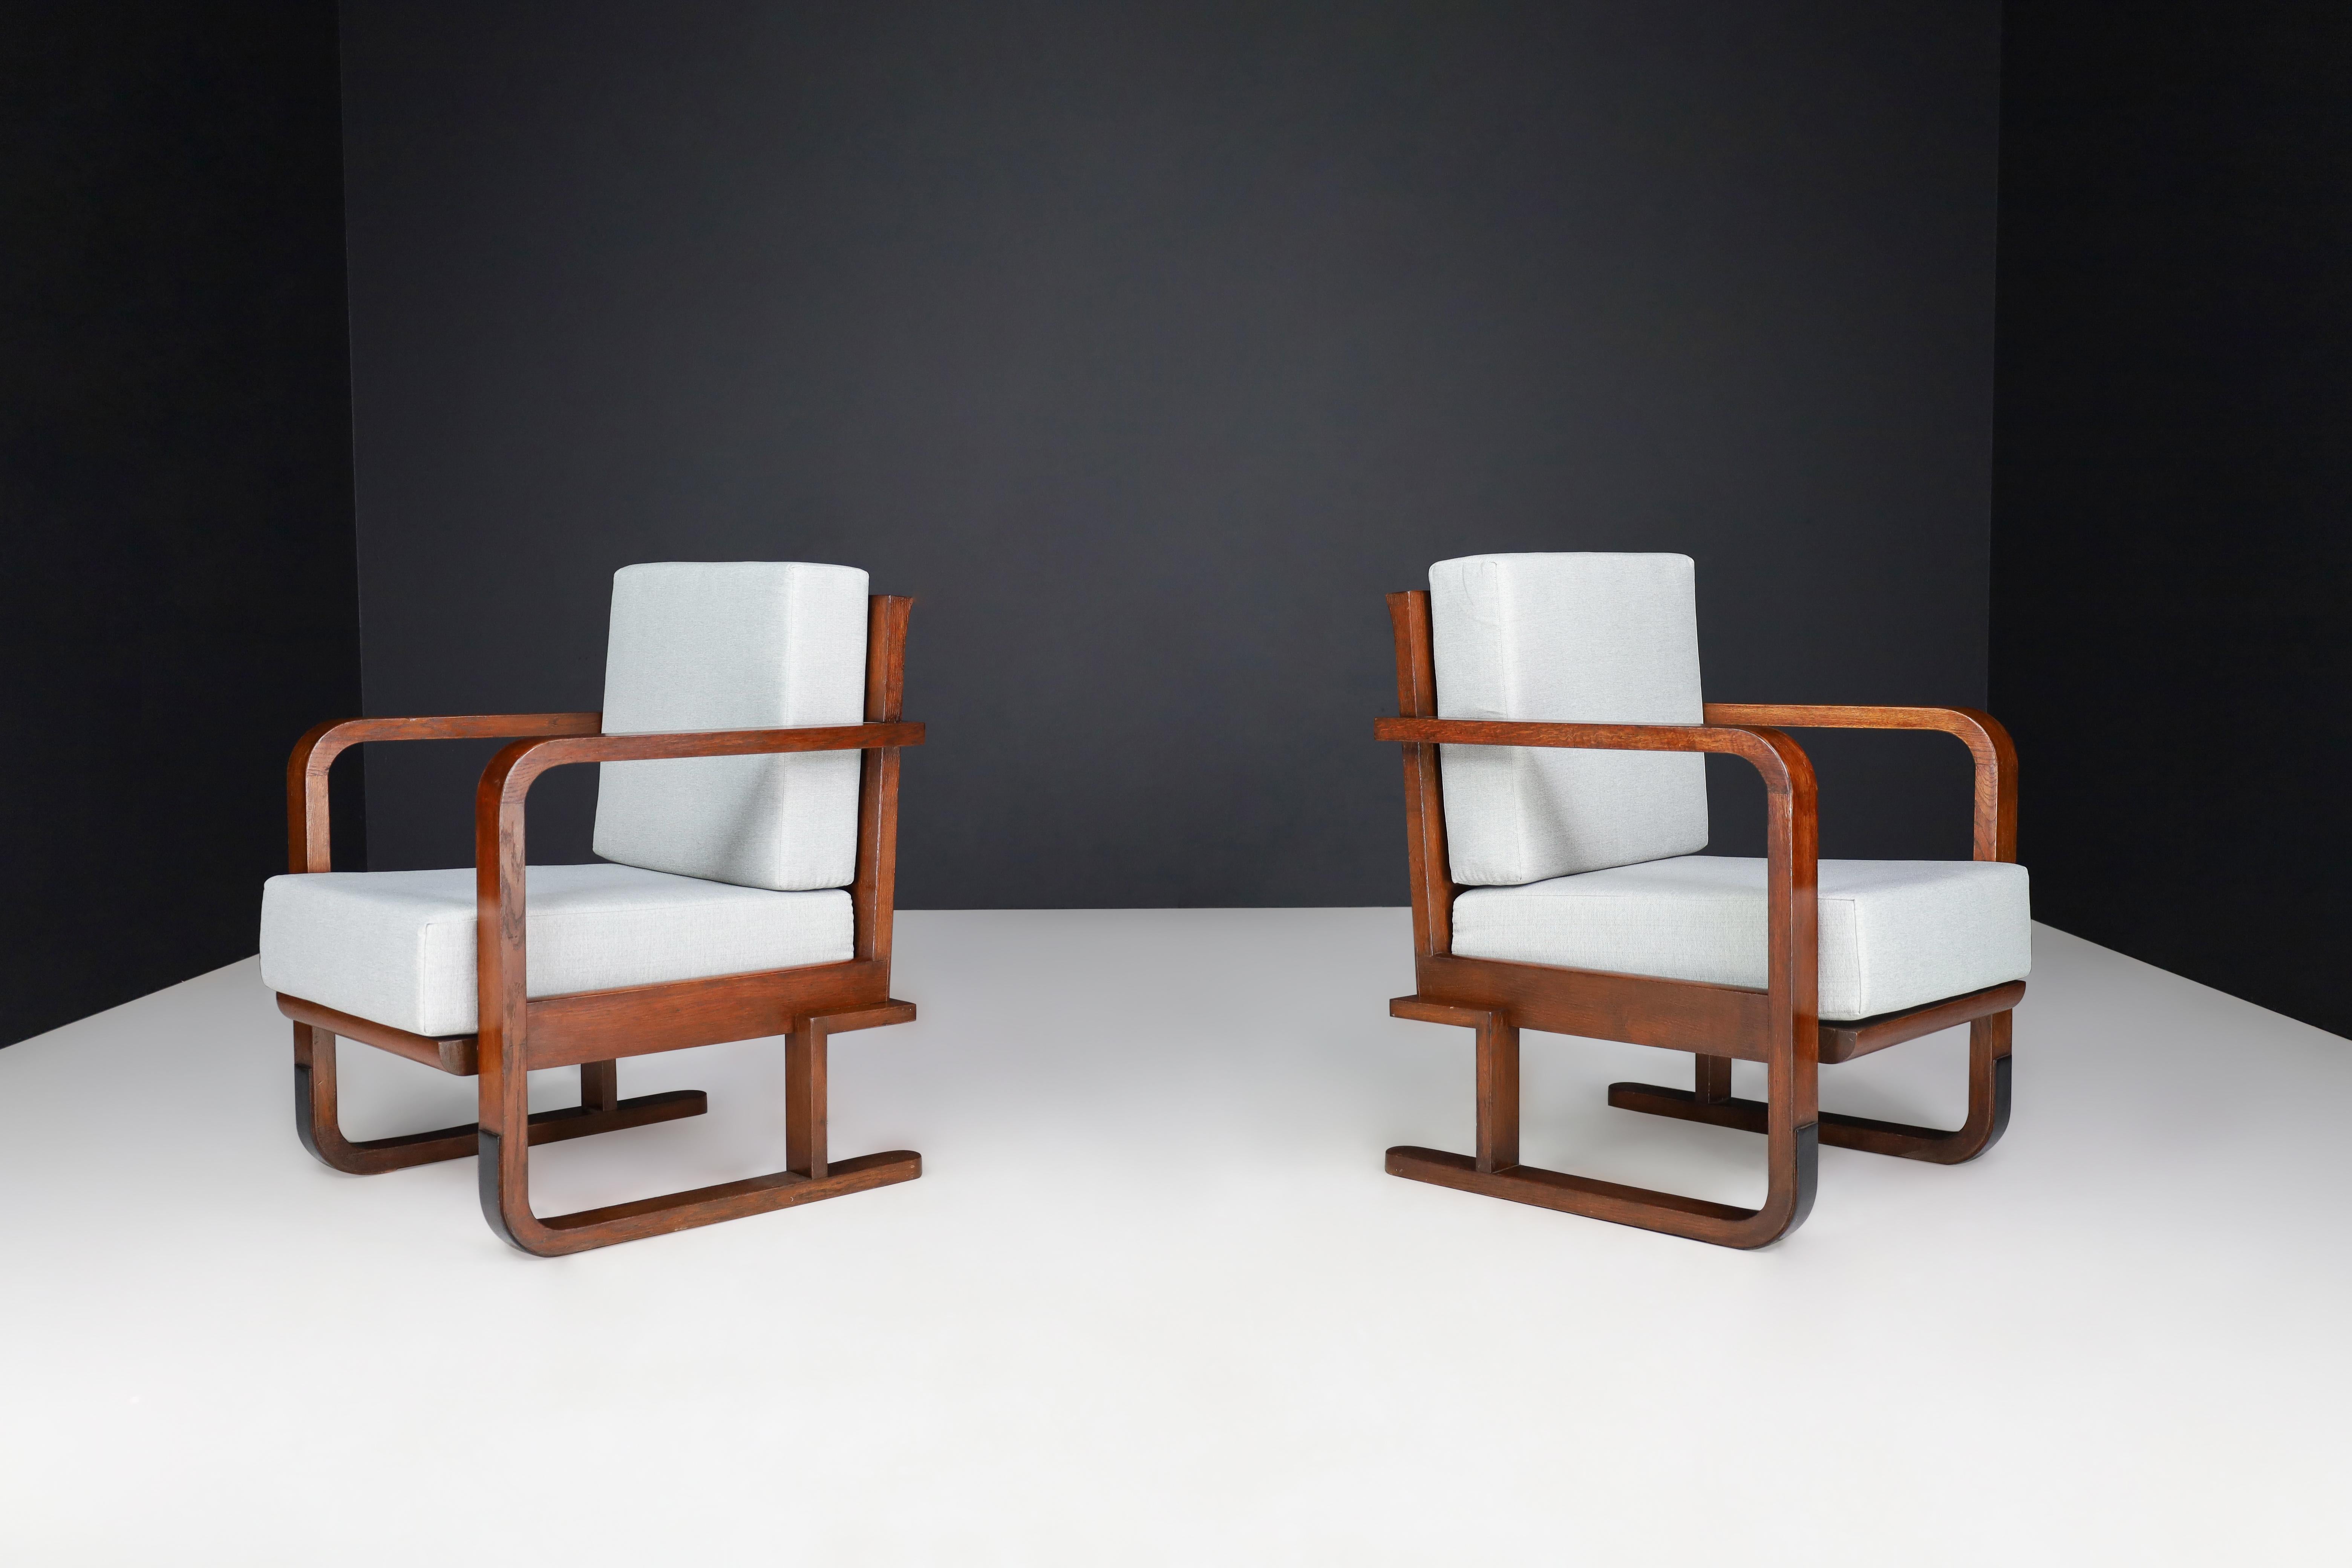 Fauteuils Art déco en chêne cintré et nouveau tissu d'ameublement, Autriche 1930

Il s'agit de deux fauteuils ou chaises longues Art déco fabriqués en Autriche dans les années 1930. Elles sont fabriquées en bois de chêne et ont été recouvertes d'un